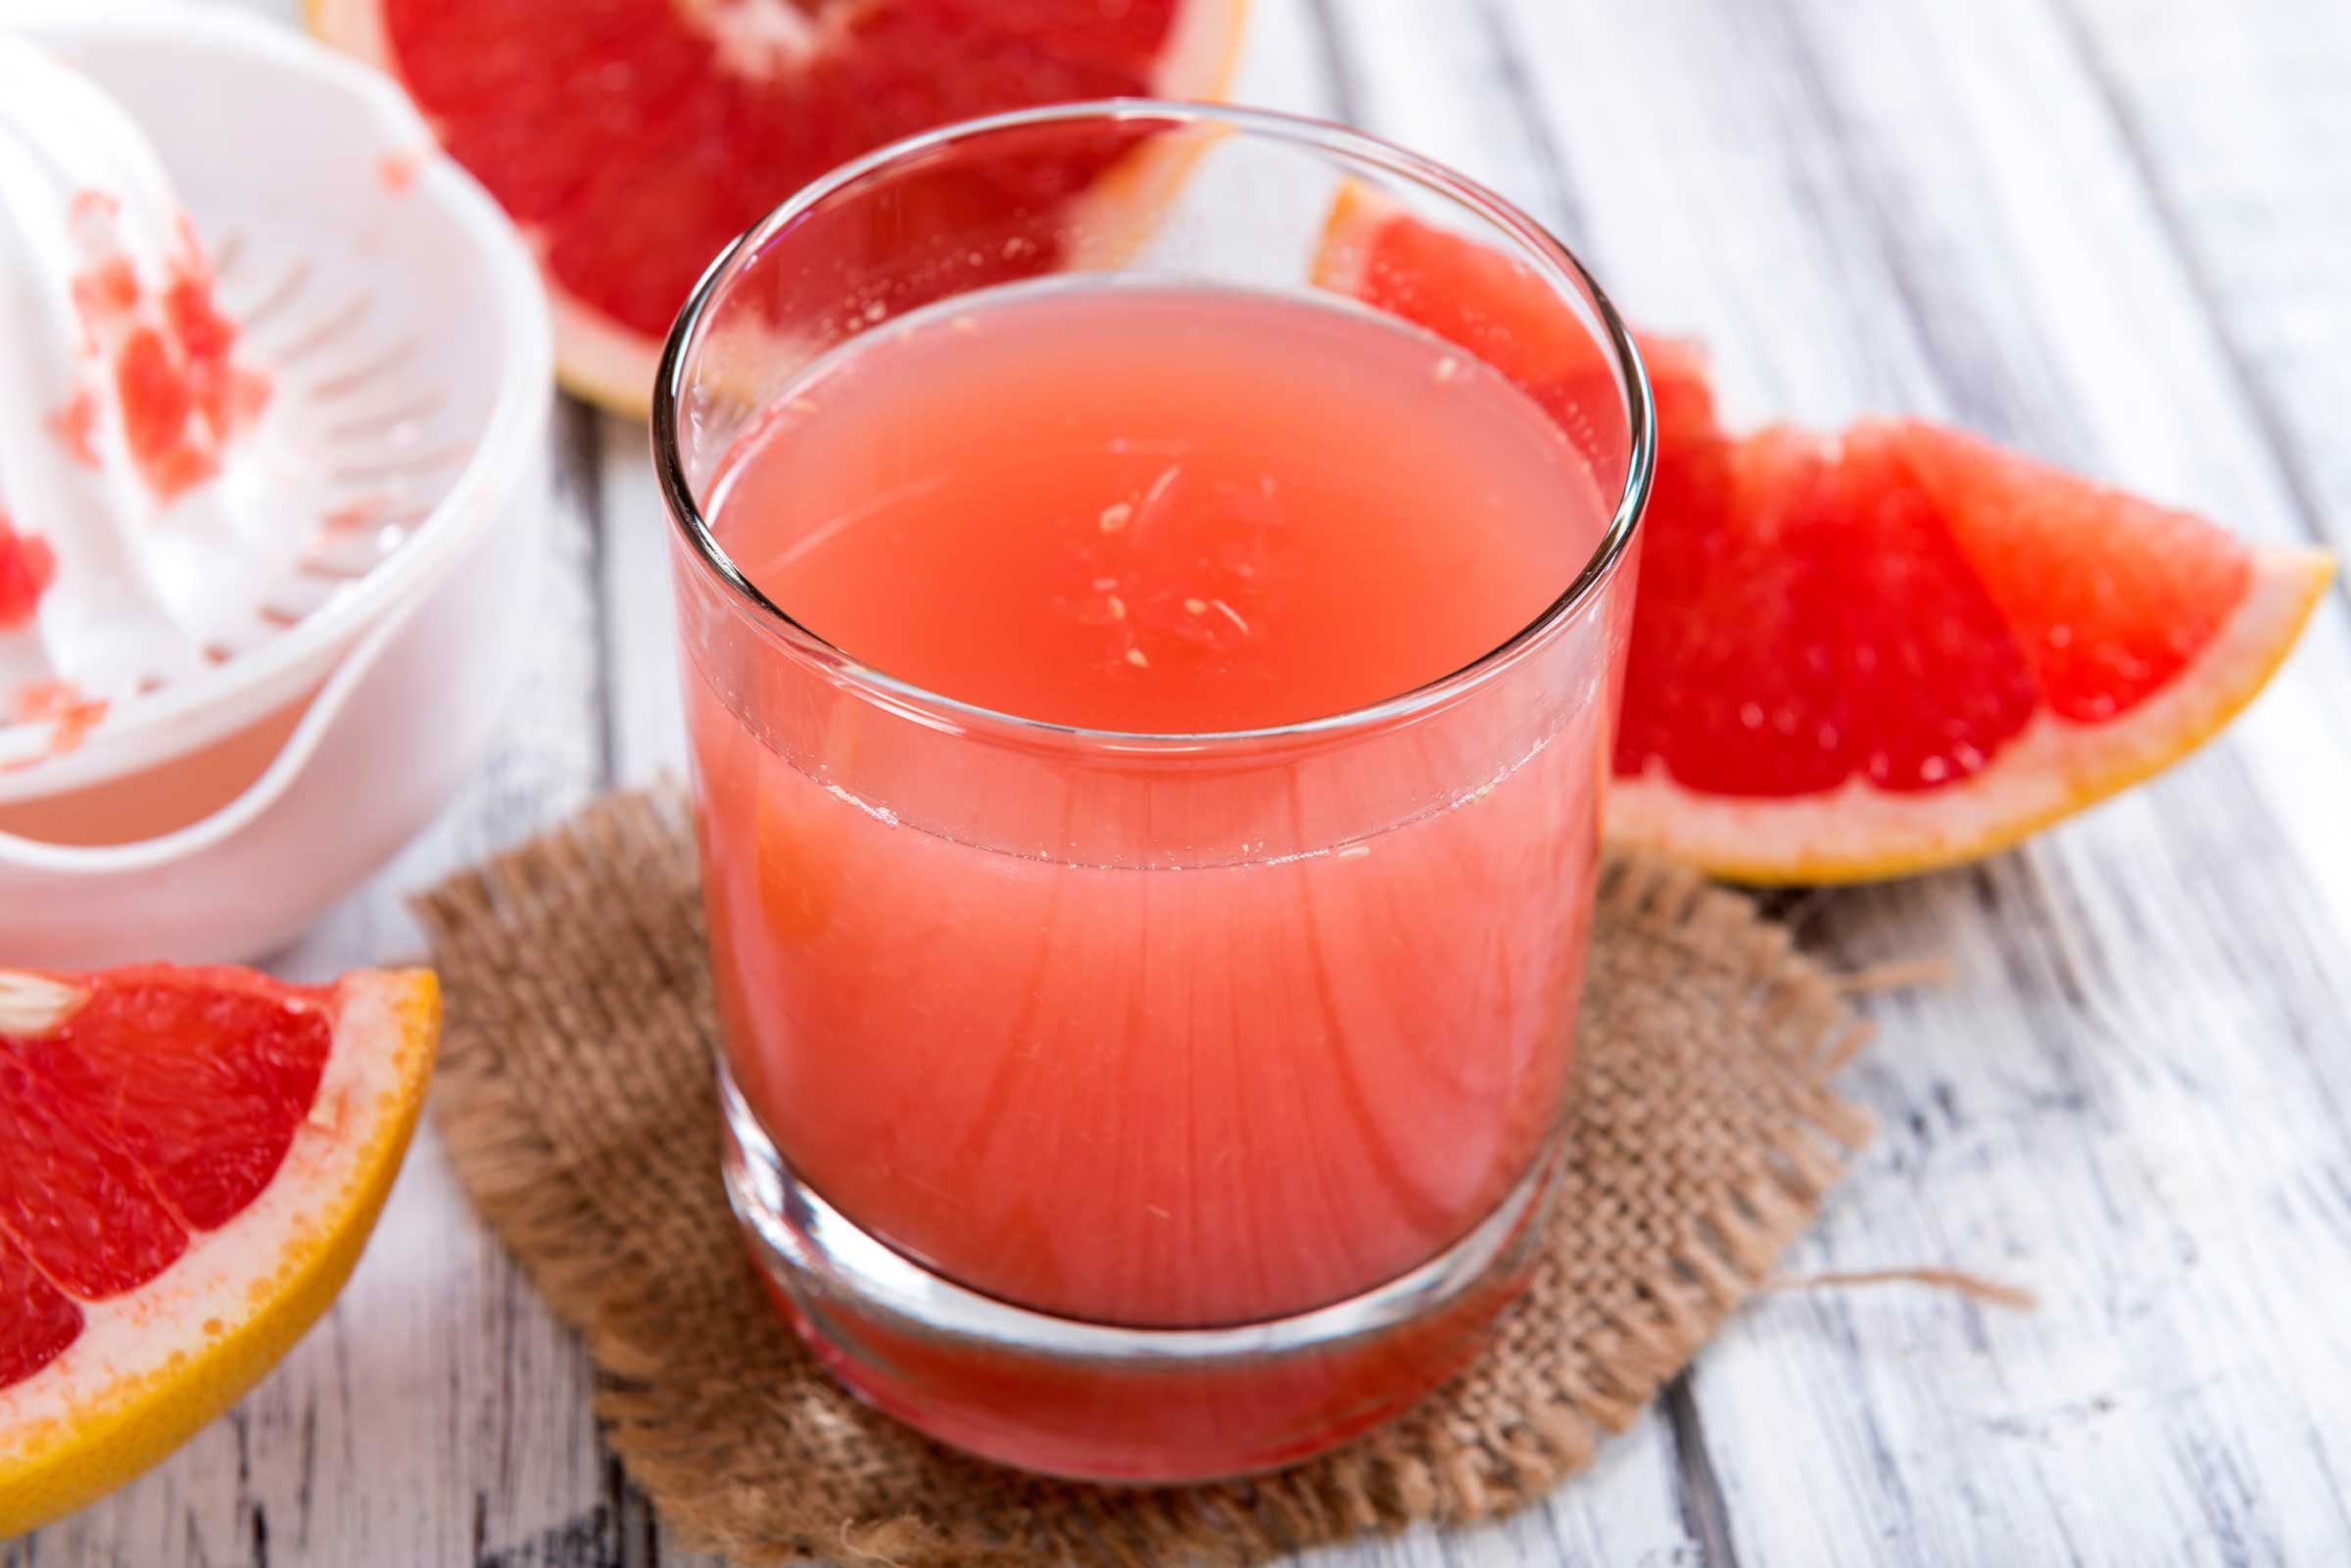 6 Surprising Health Benefits (and 2 Dangers) of Grapefruit